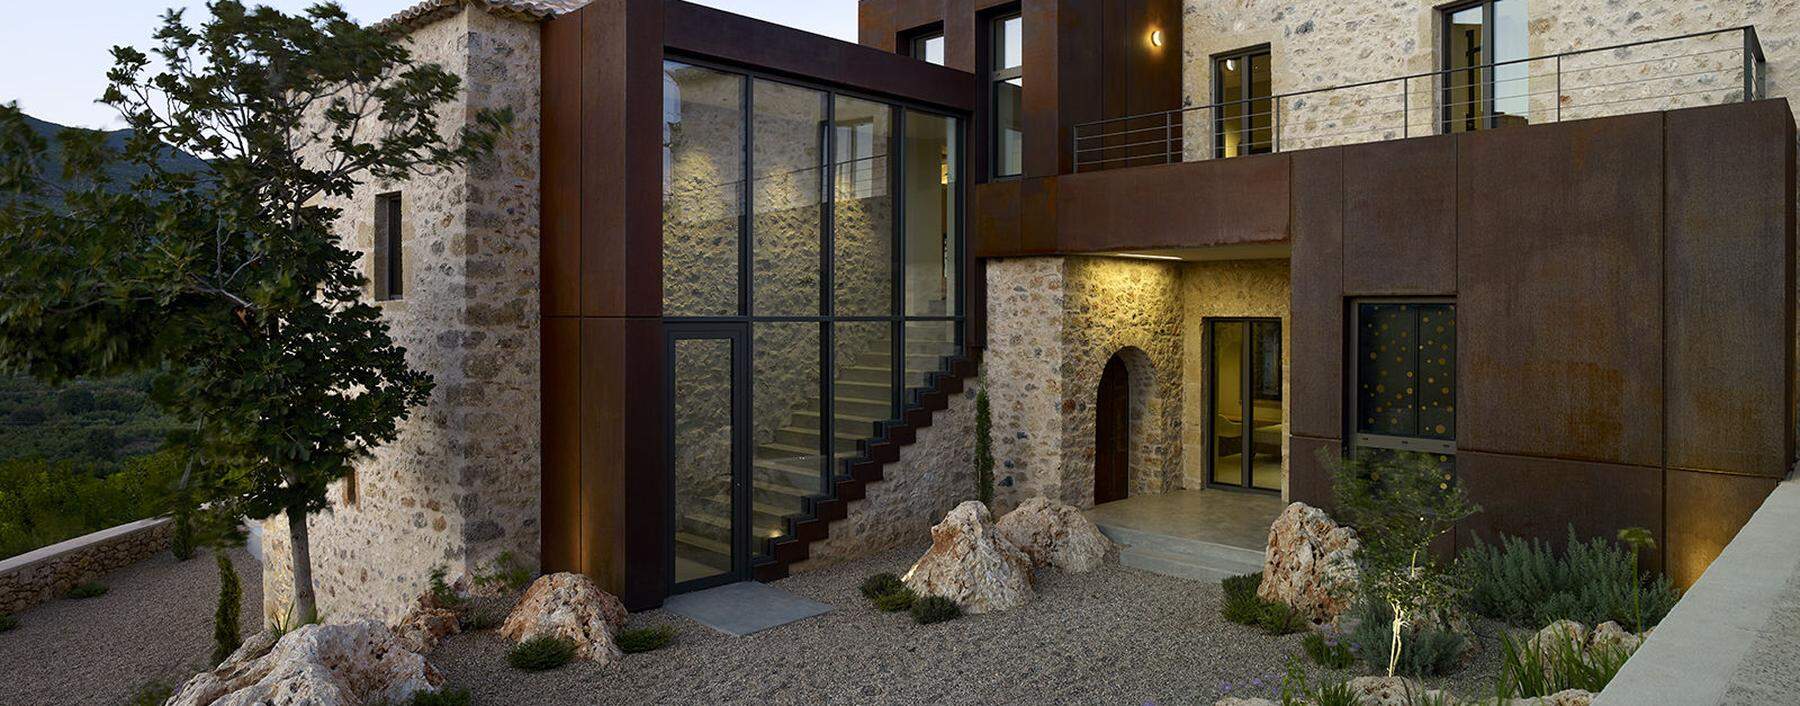 Home-Office in ausgezeichneter Architektur in Griechenland.